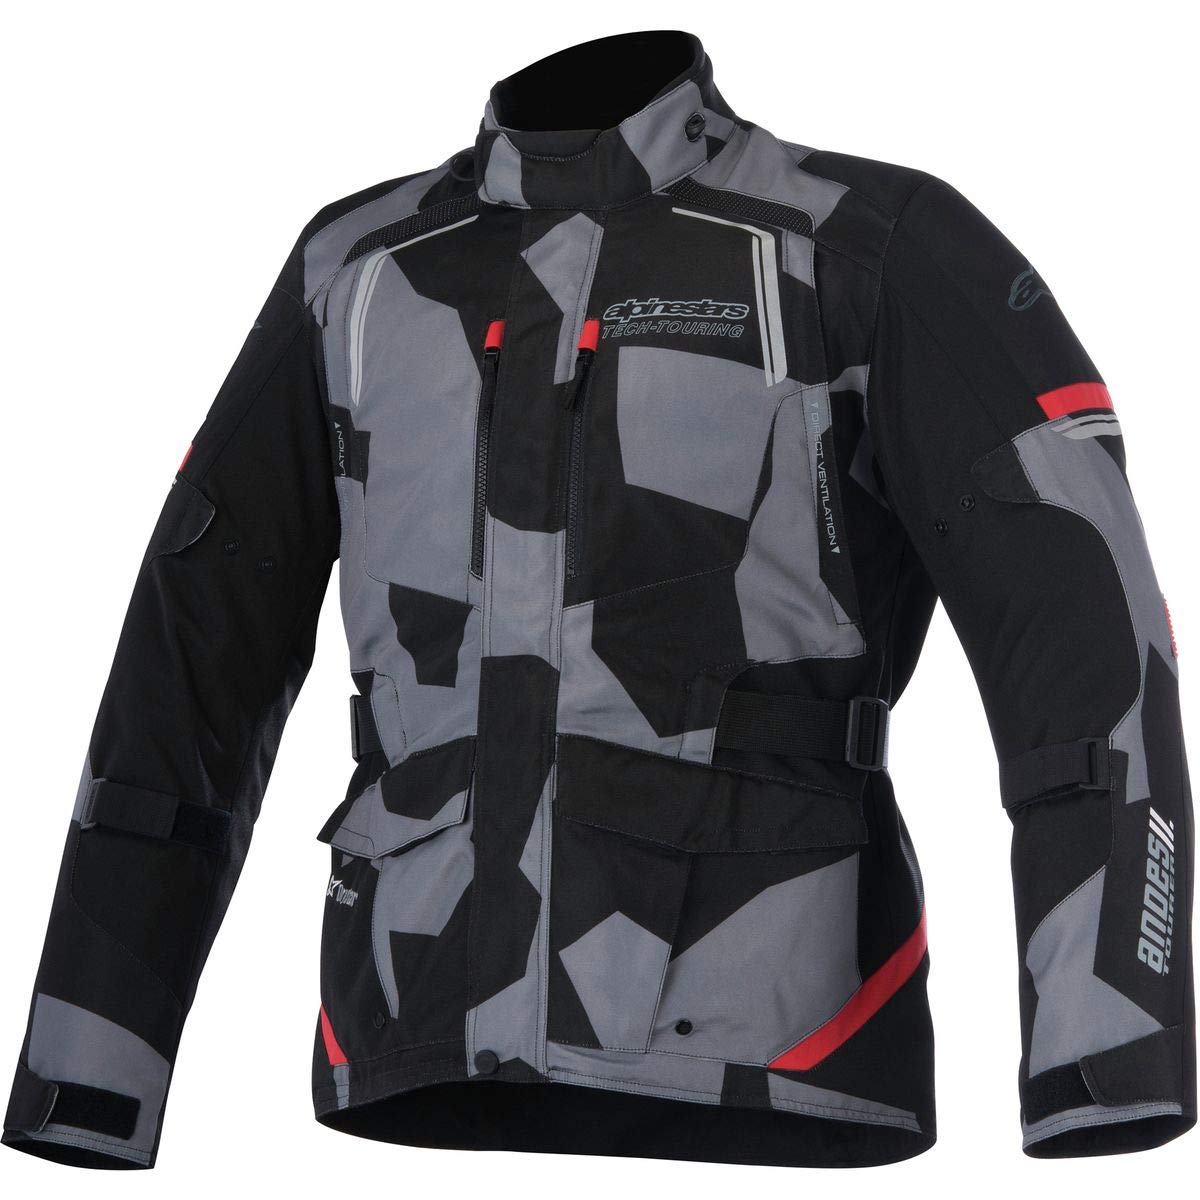 Alpinestars Men's Andes v2 Drystar Motorcycle Jacket, Black/Camo/Red, Small